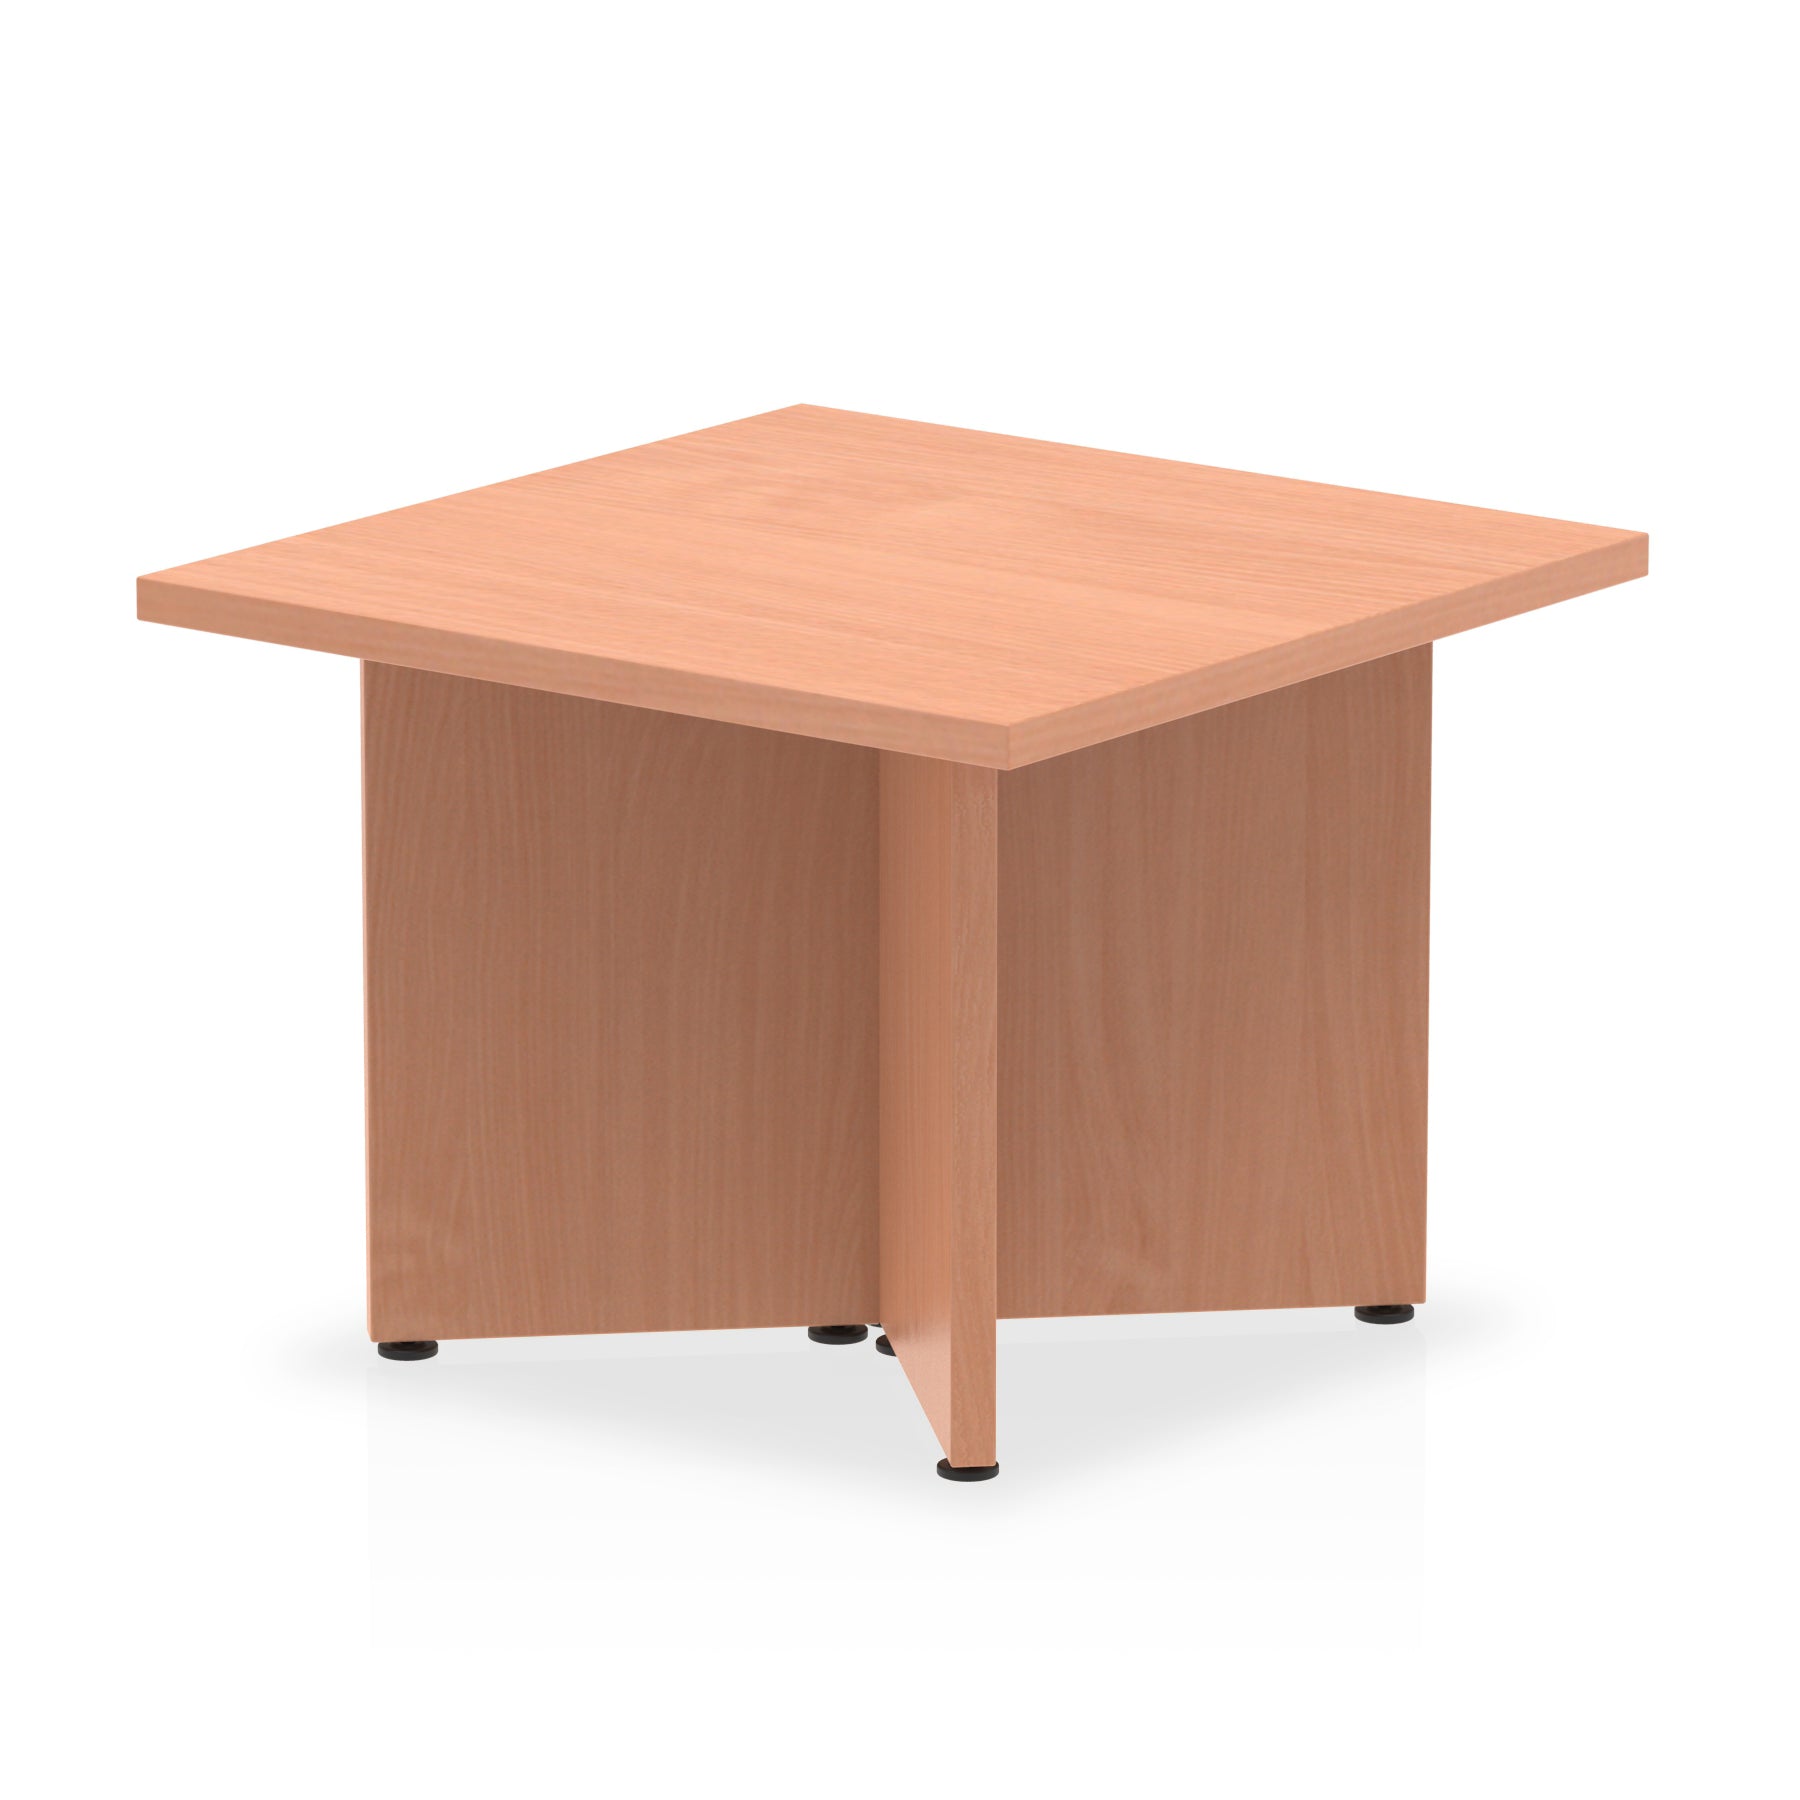 Photos - Dining Table Dynamic Office Solutions Impulse Coffee Table Arrowhead Leg I003422 